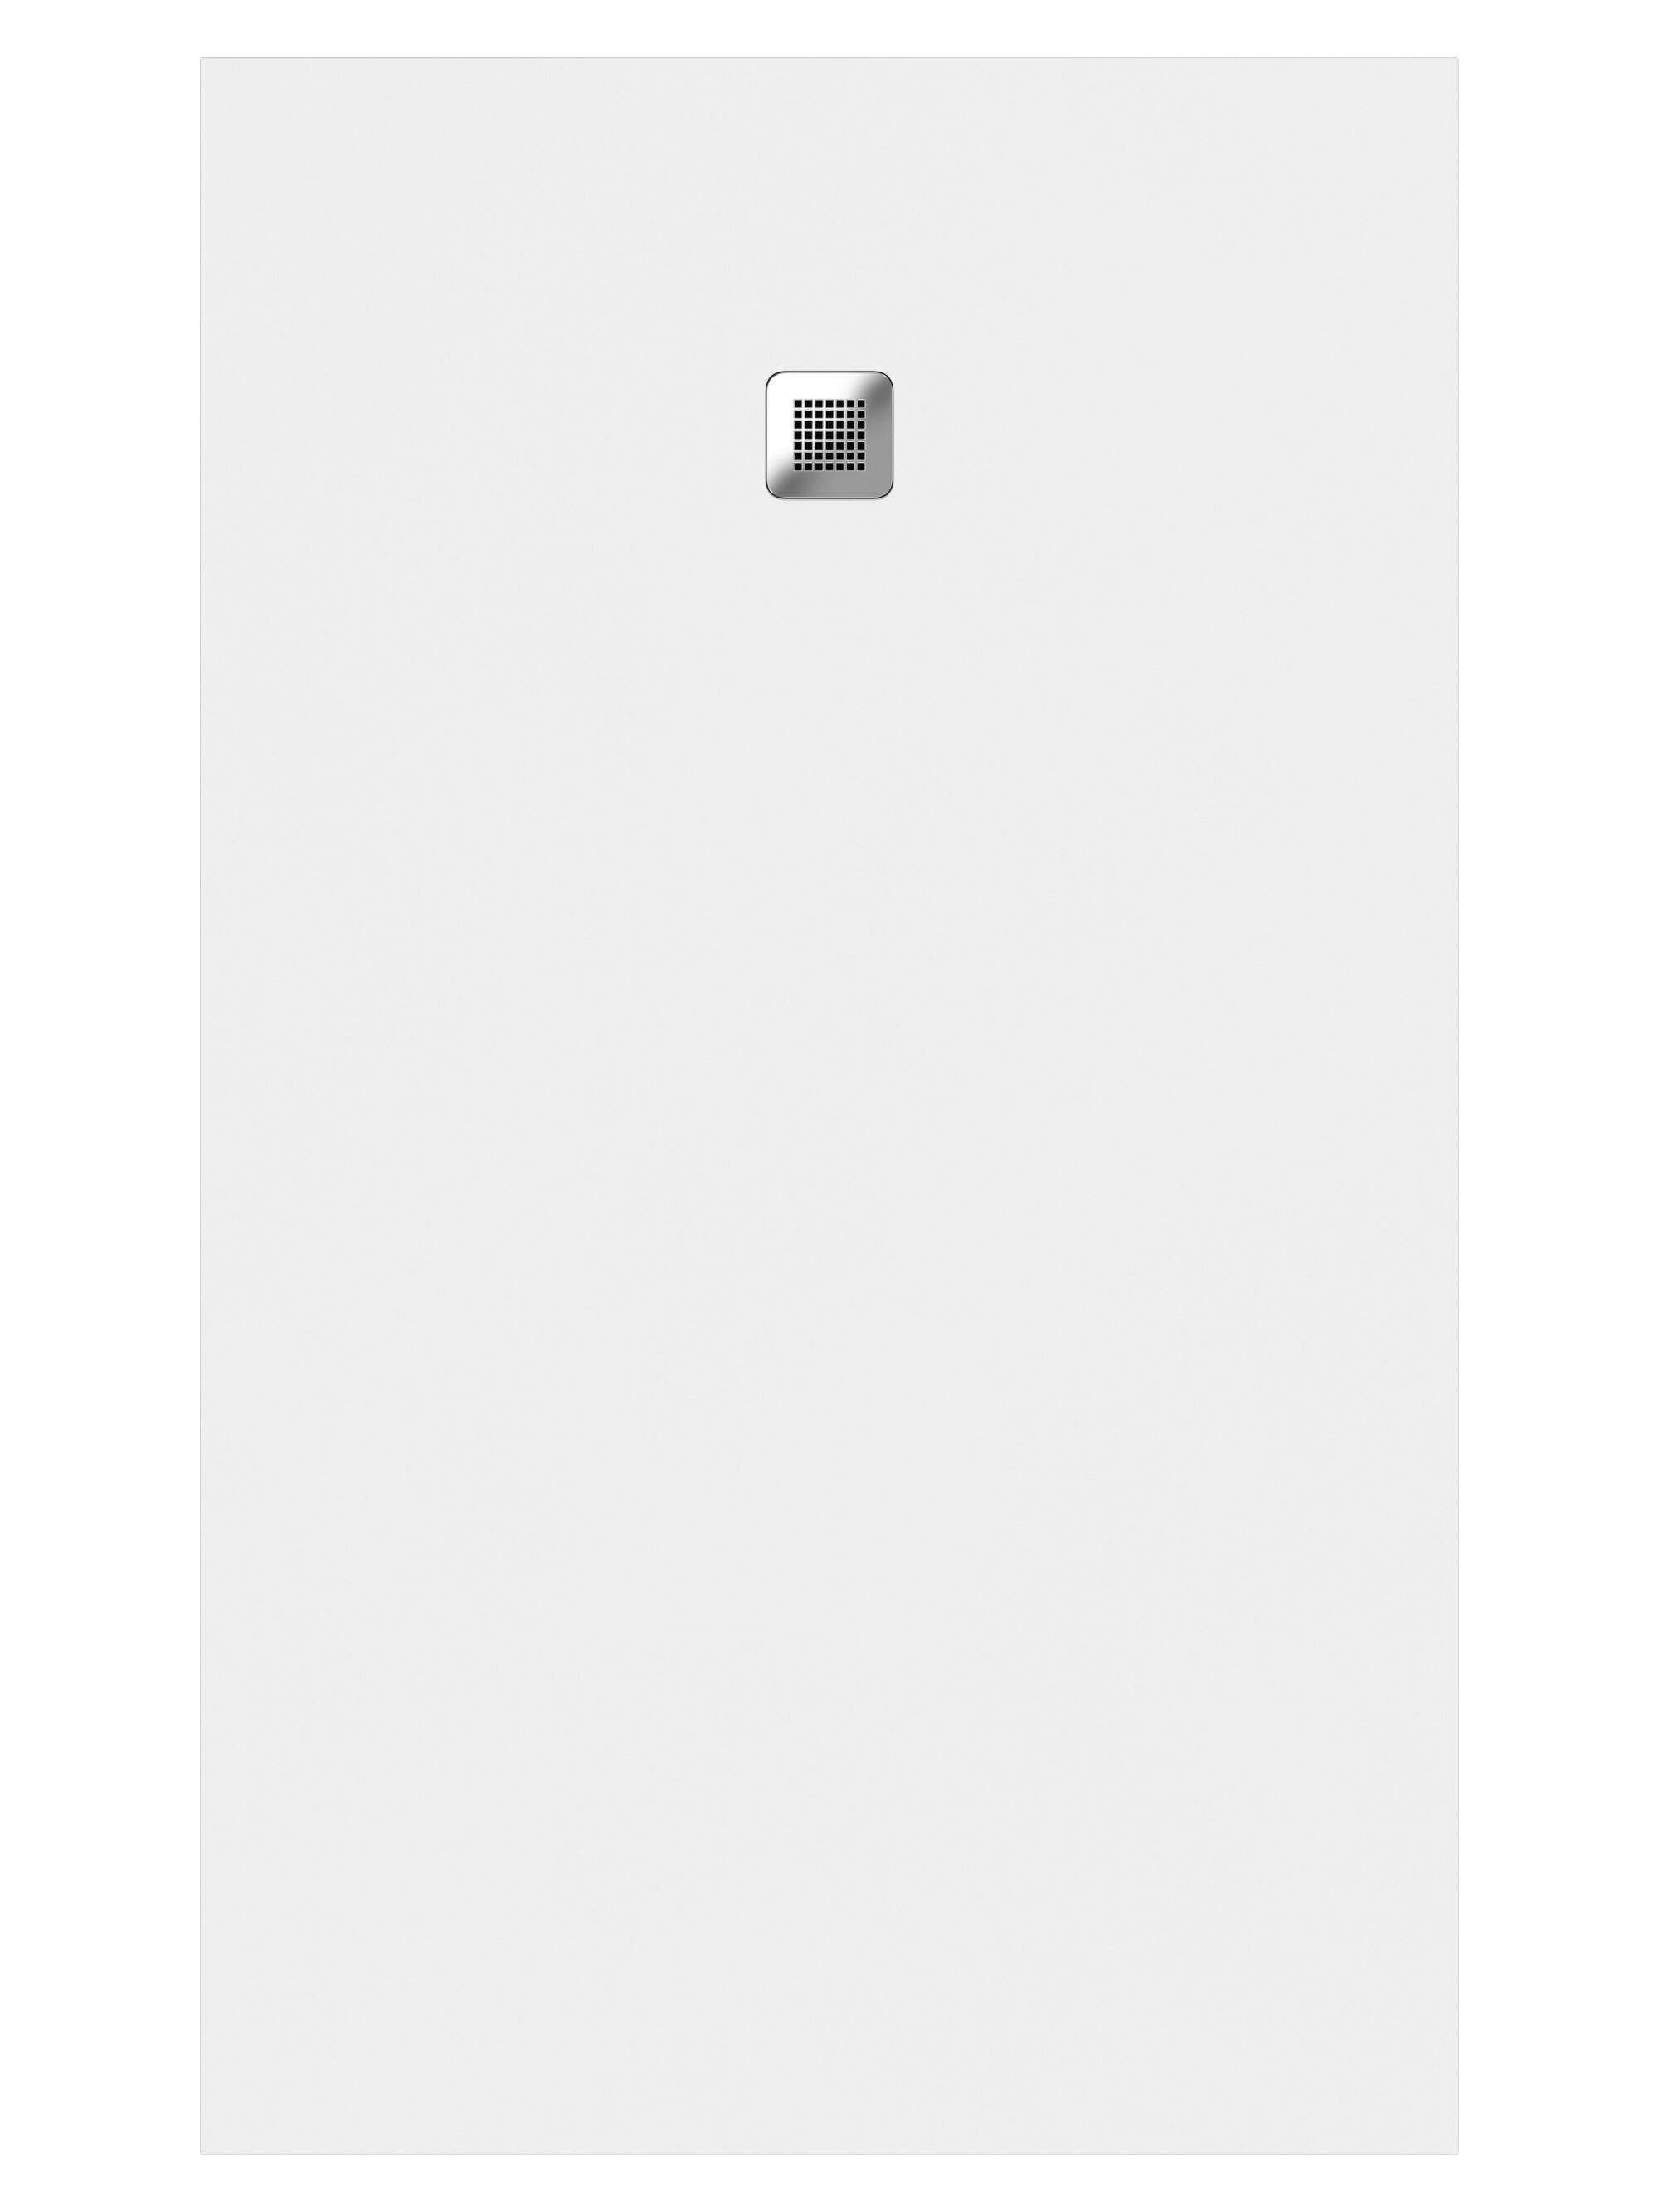 Plato de ducha kioto 140x70 cm blanco